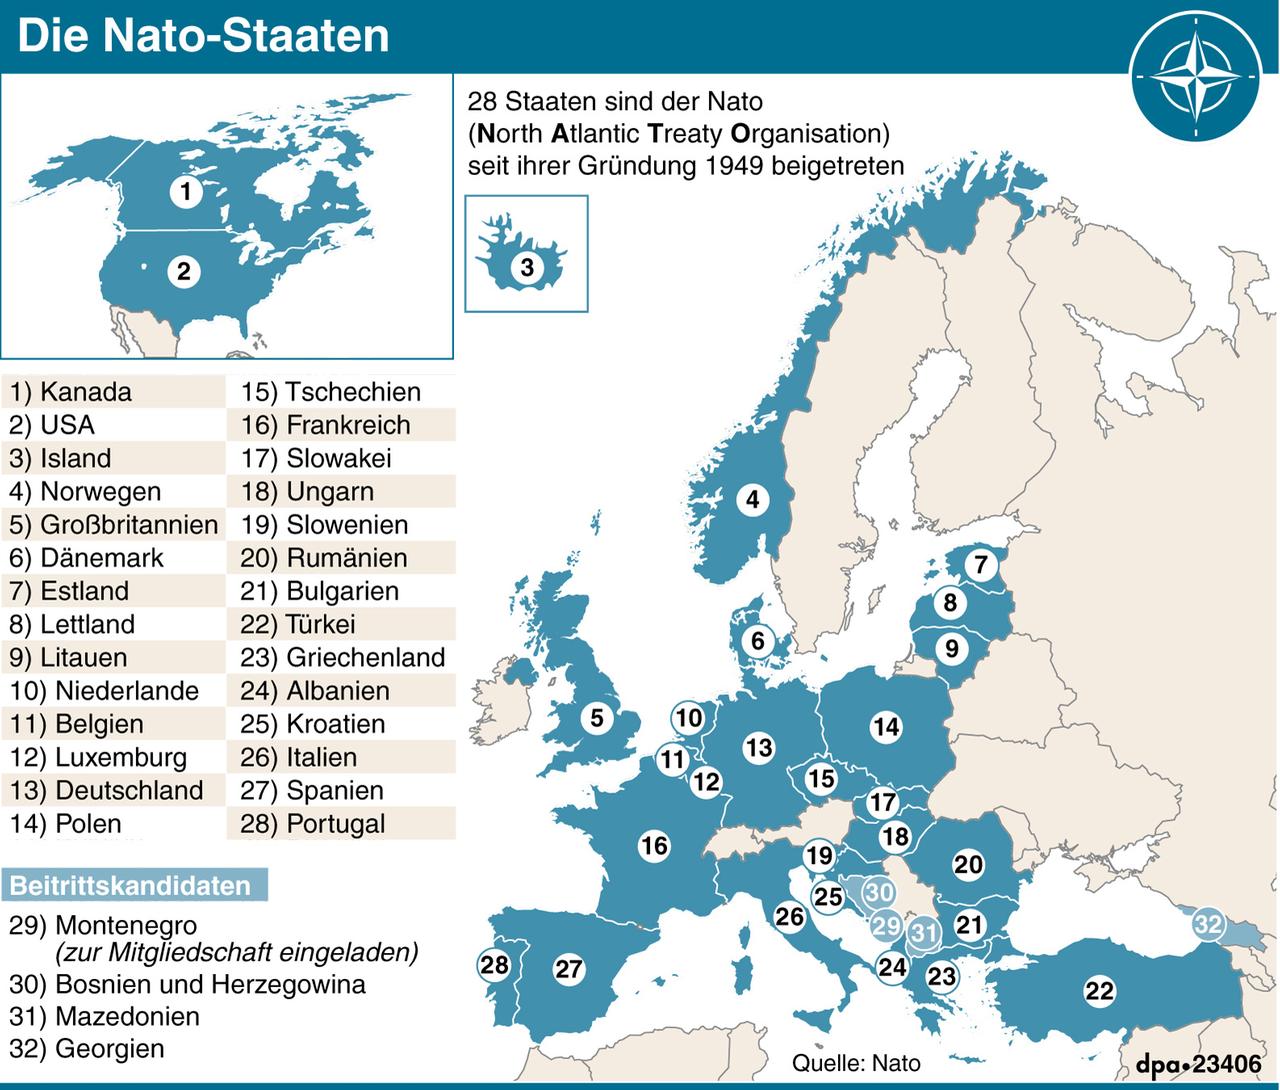 Karte mit Nato-Staaten und Beitrittskandidaten.